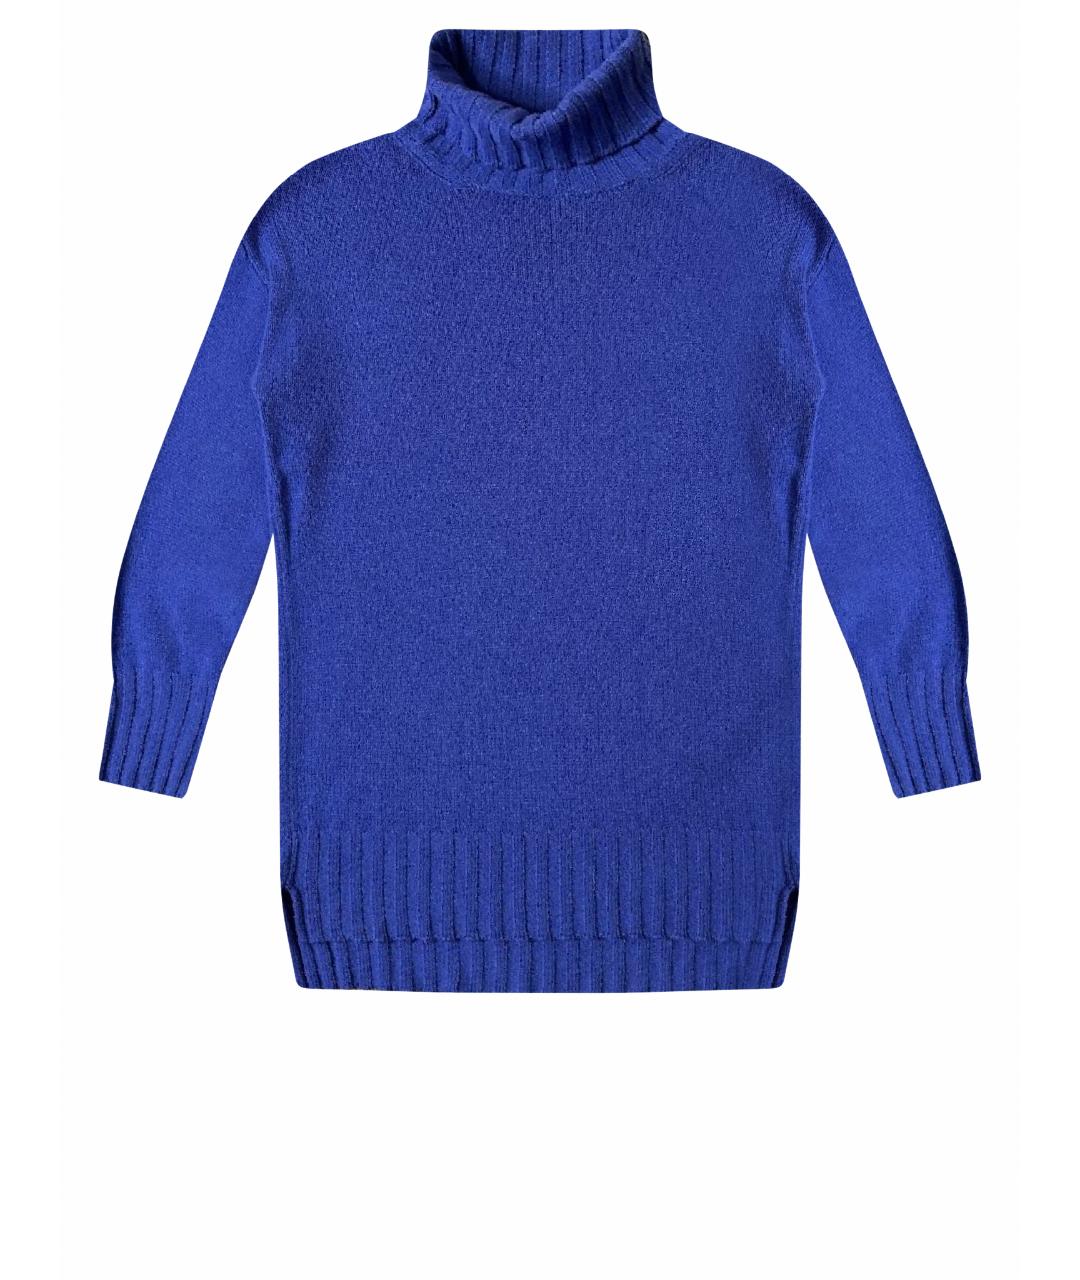 PANICALE Синий кашемировый джемпер / свитер, фото 1